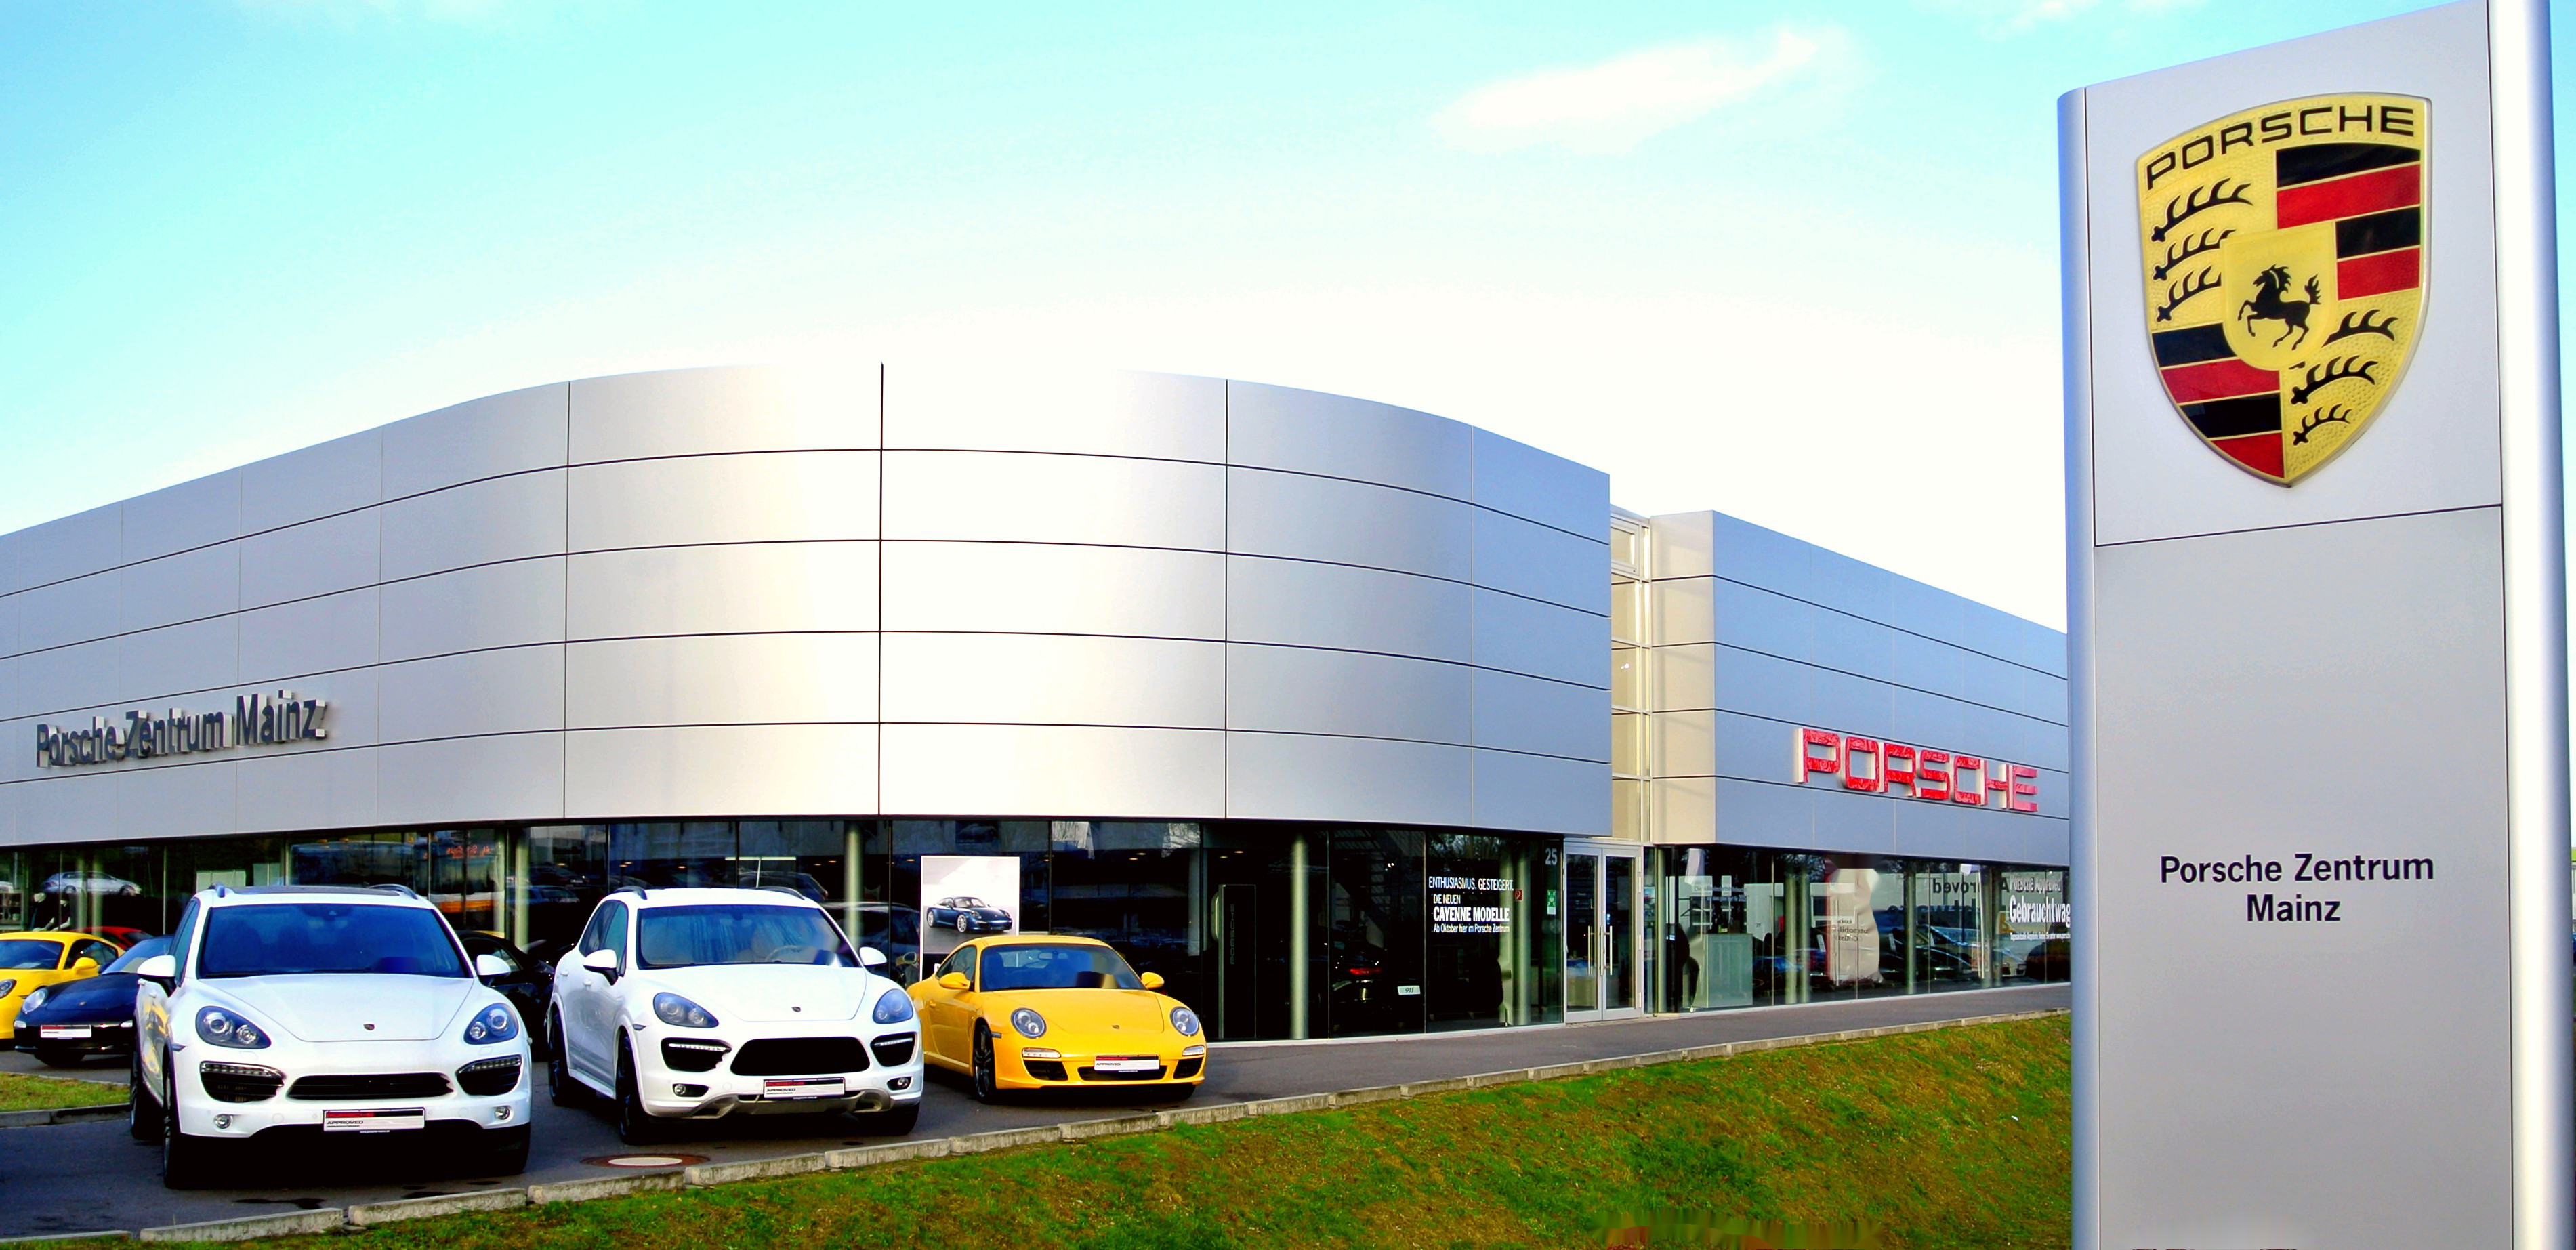 Porsche Zentrum Mainz, Hechtsheimer Straße 25 in Mainz